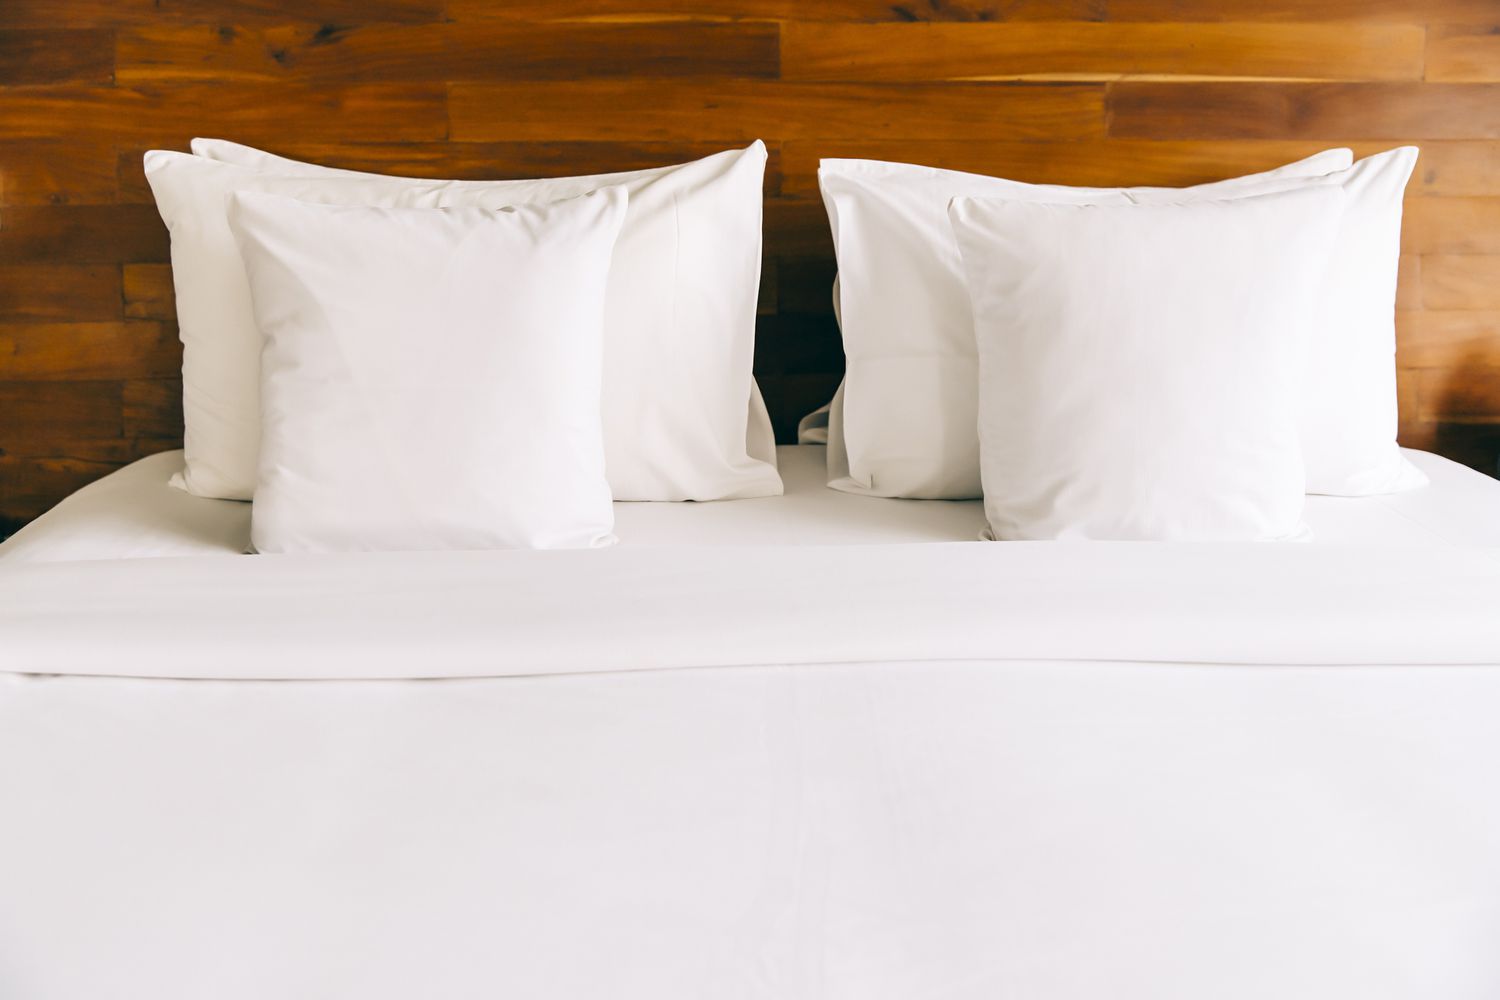 Un lit fait avec des draps et des oreillers blancs contre une tête de lit en bois.